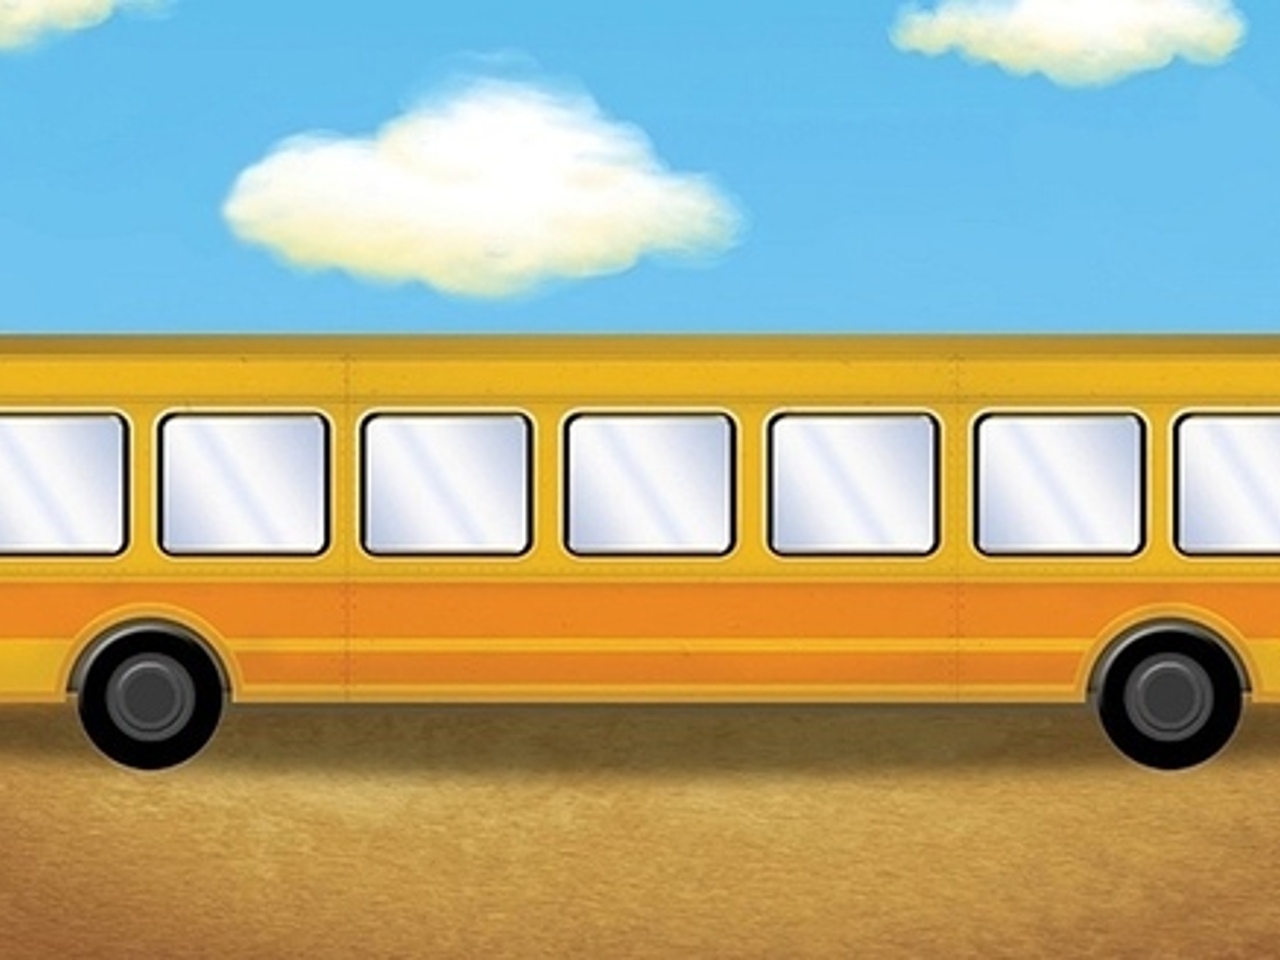 В какую сторону едет автобус. В какую сторону едет автобус ответ. Куда едет автобус загадка ответ. Загадка в какую сторону едет автобус картинка ответ.